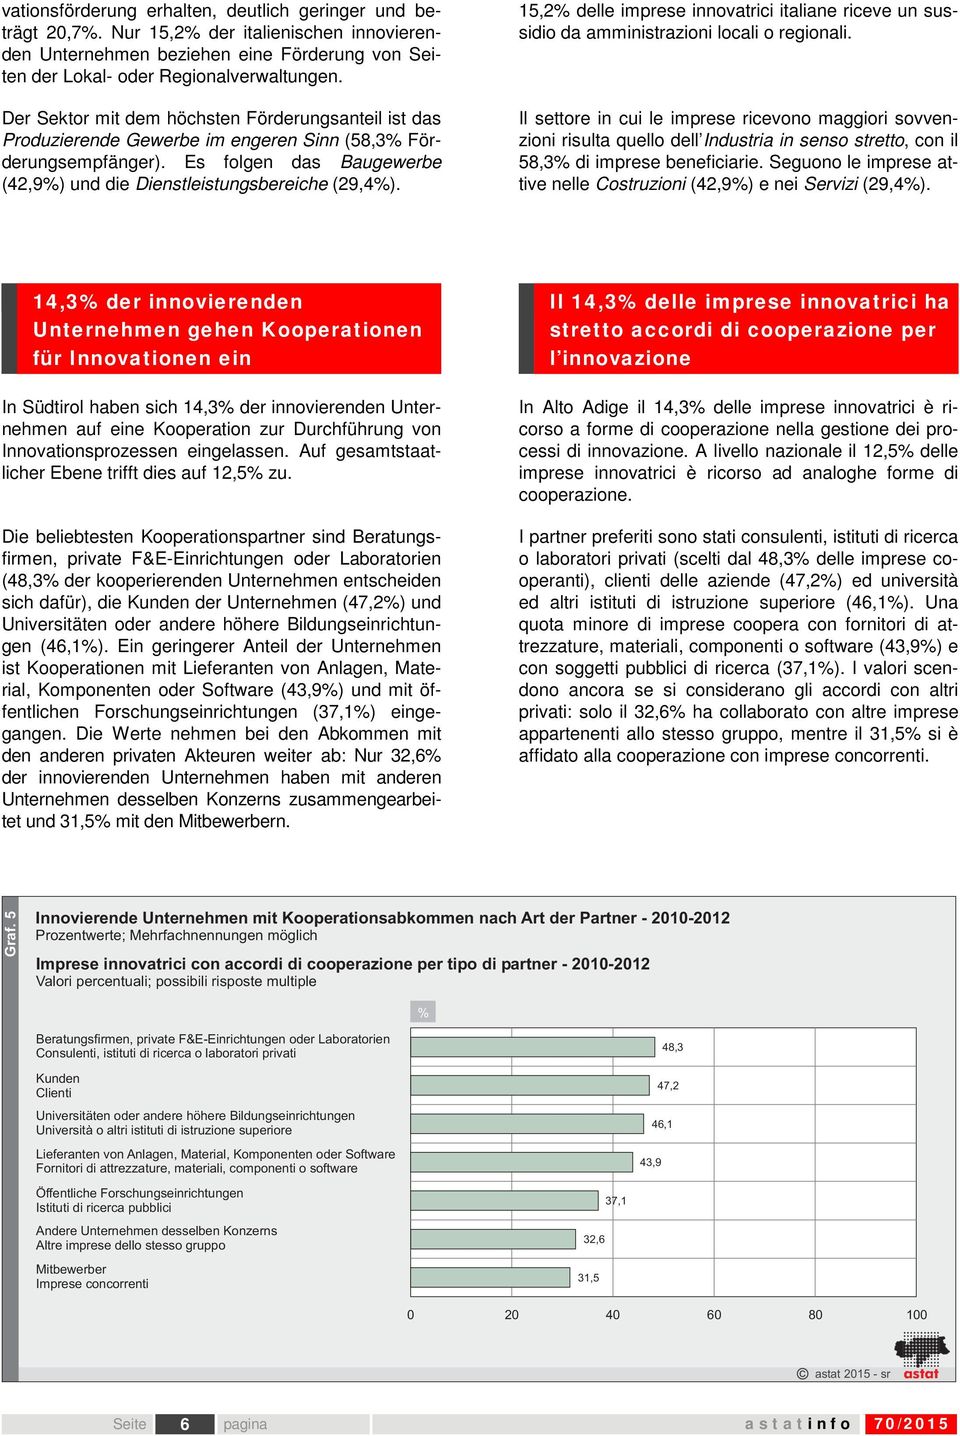 15,2% delle imprese innovatrici italiane riceve un sussidio da amministrazioni locali o regionali.